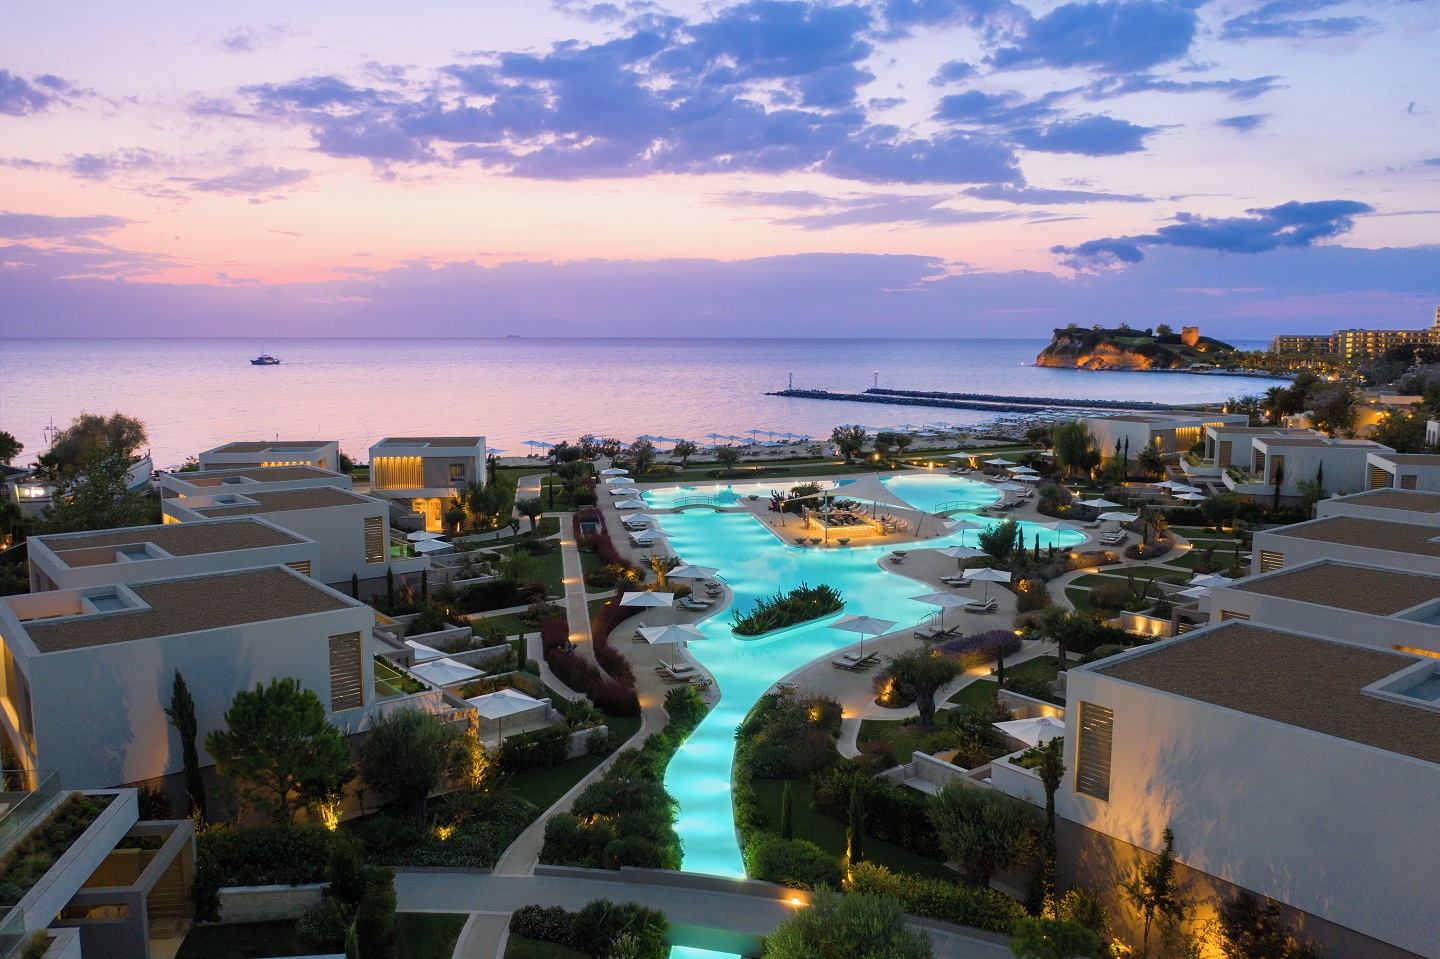 Στ. Ανδρεάδης, Sani/Ikos: Η Deloitte αποκαλεί «ξενοδοχεία του μέλλοντος» δύο resorts του ομίλου